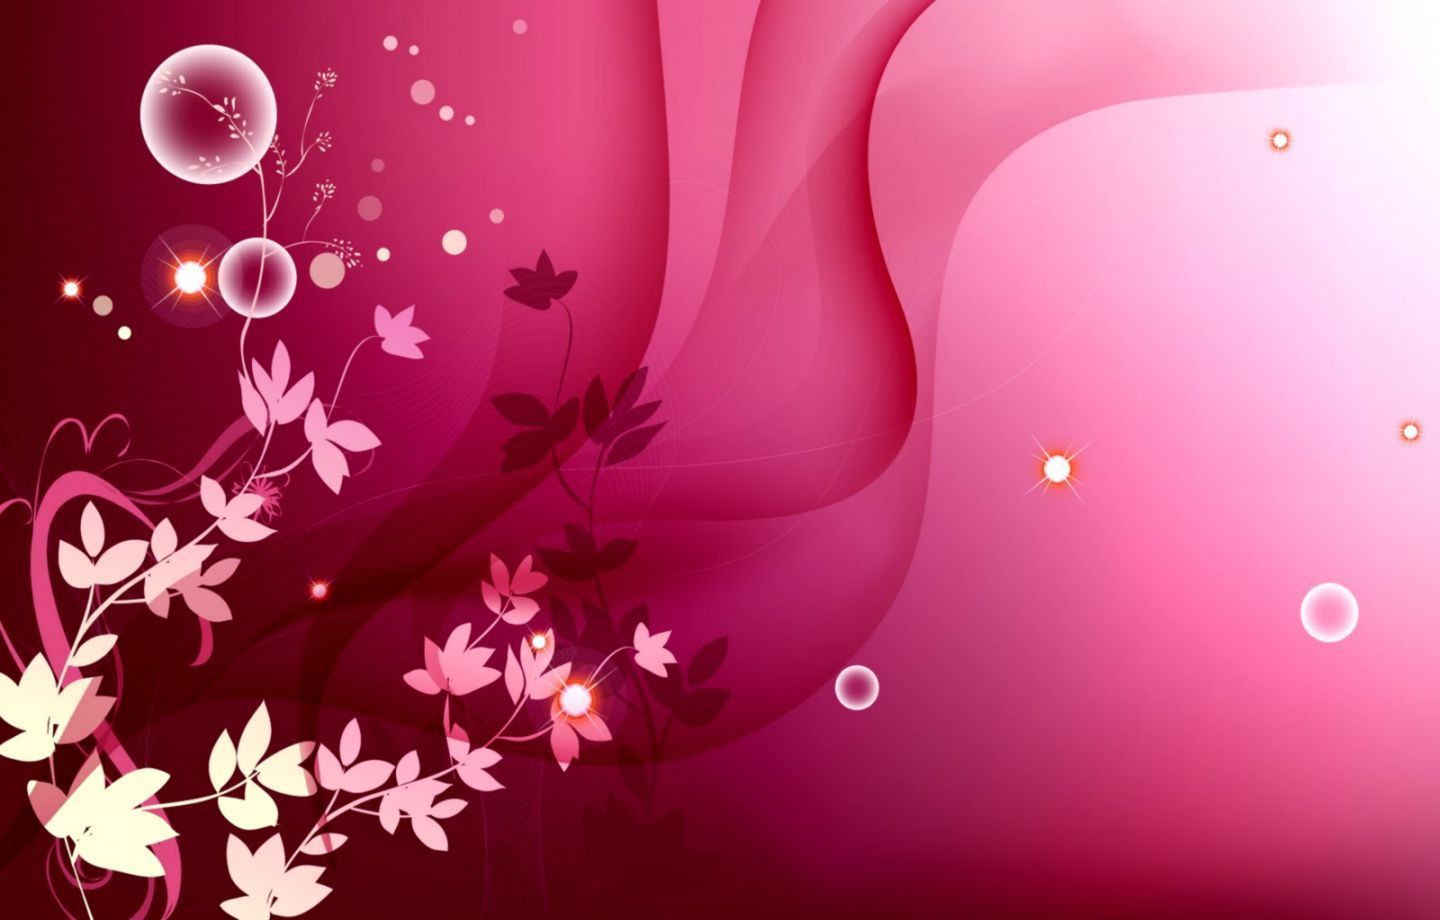 Cute Girly Pink Desktop Wallpapers